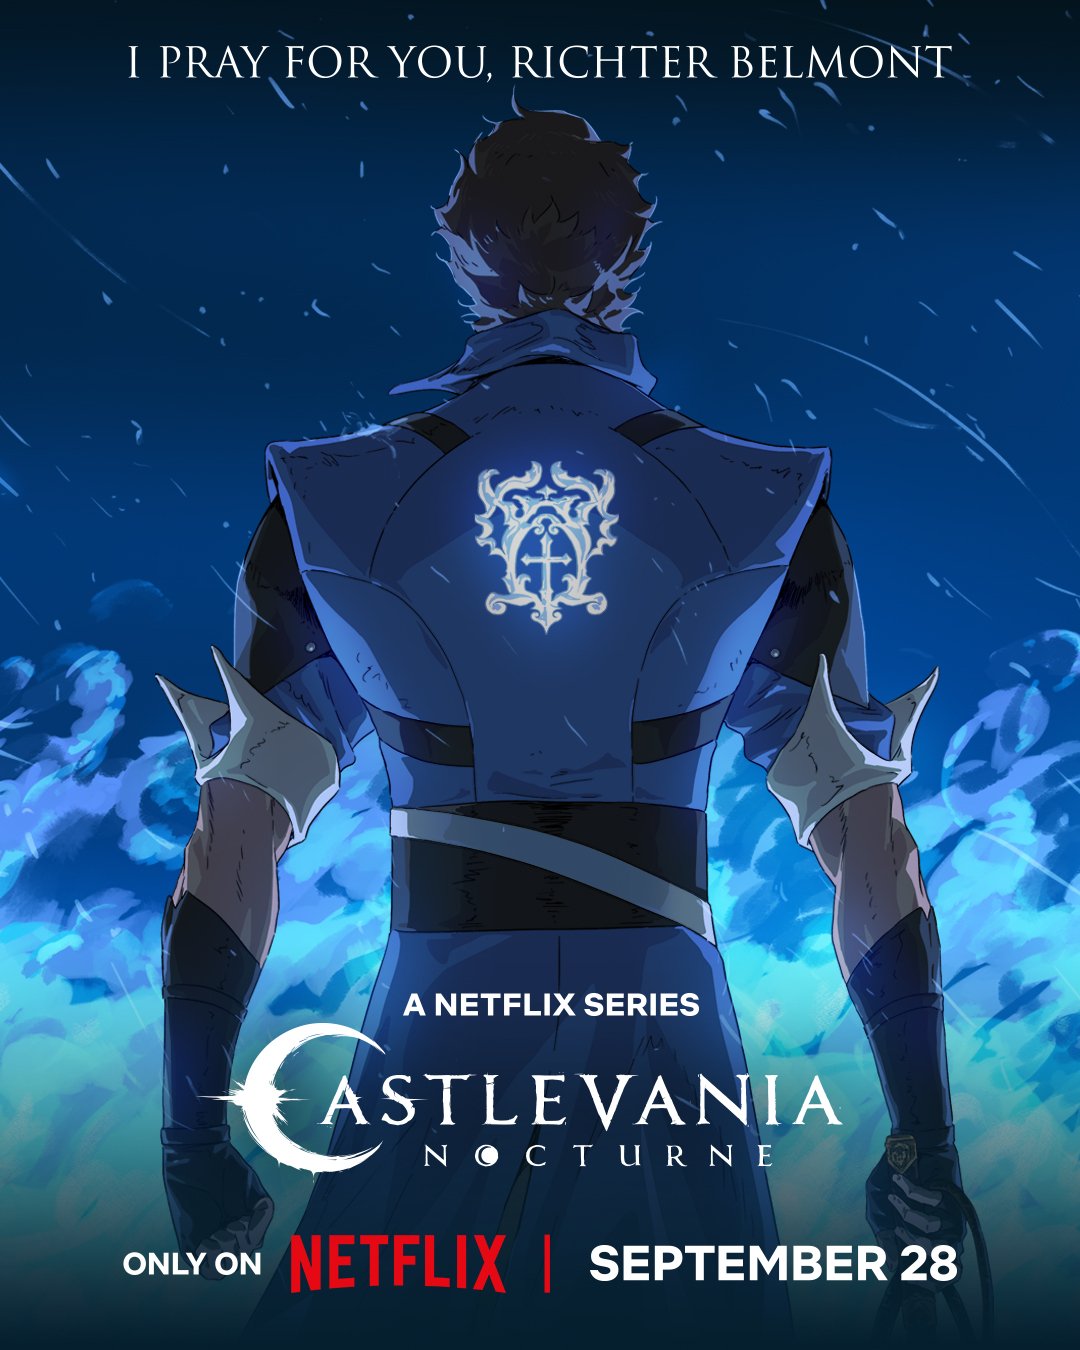 Pôster oficial de Castlevania: Noturno divulgado pela Netflix.